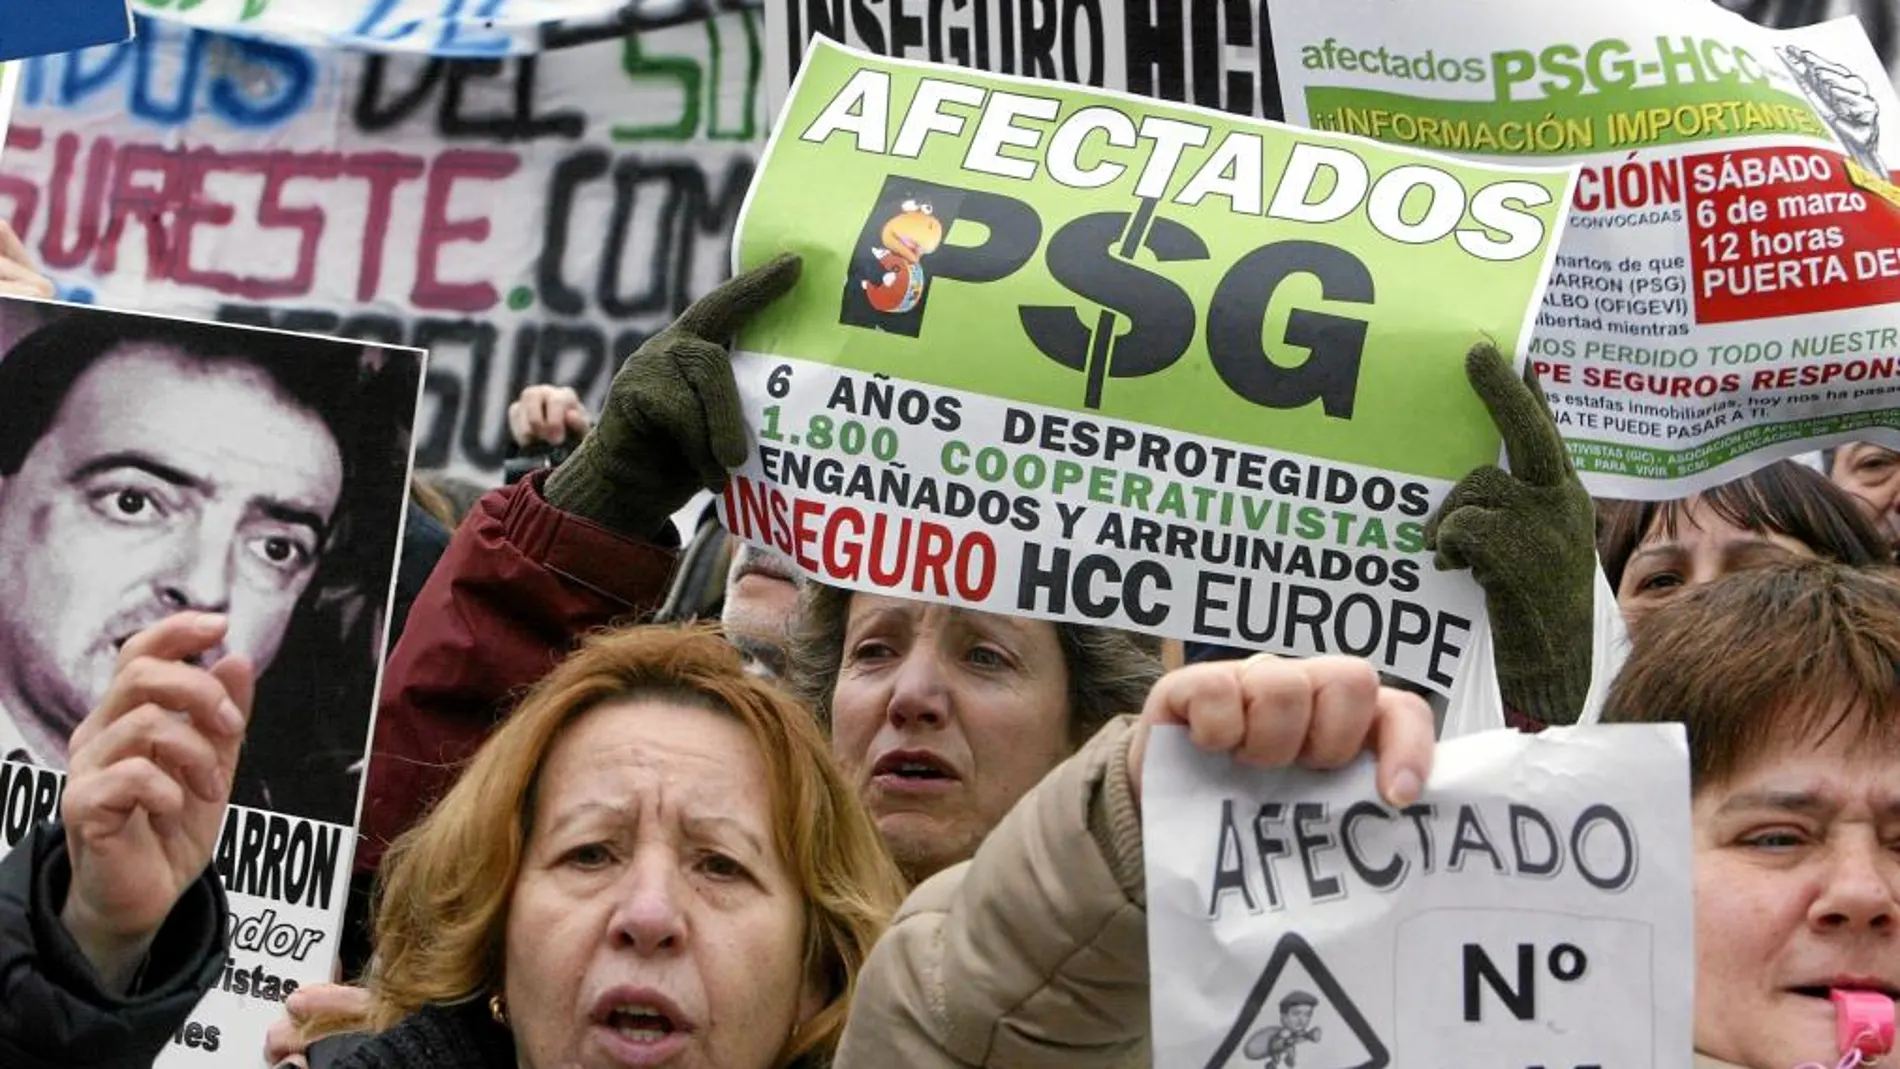 Los afectados por las cooperativas de PSG llevan ocho años luchando por sus viviendas